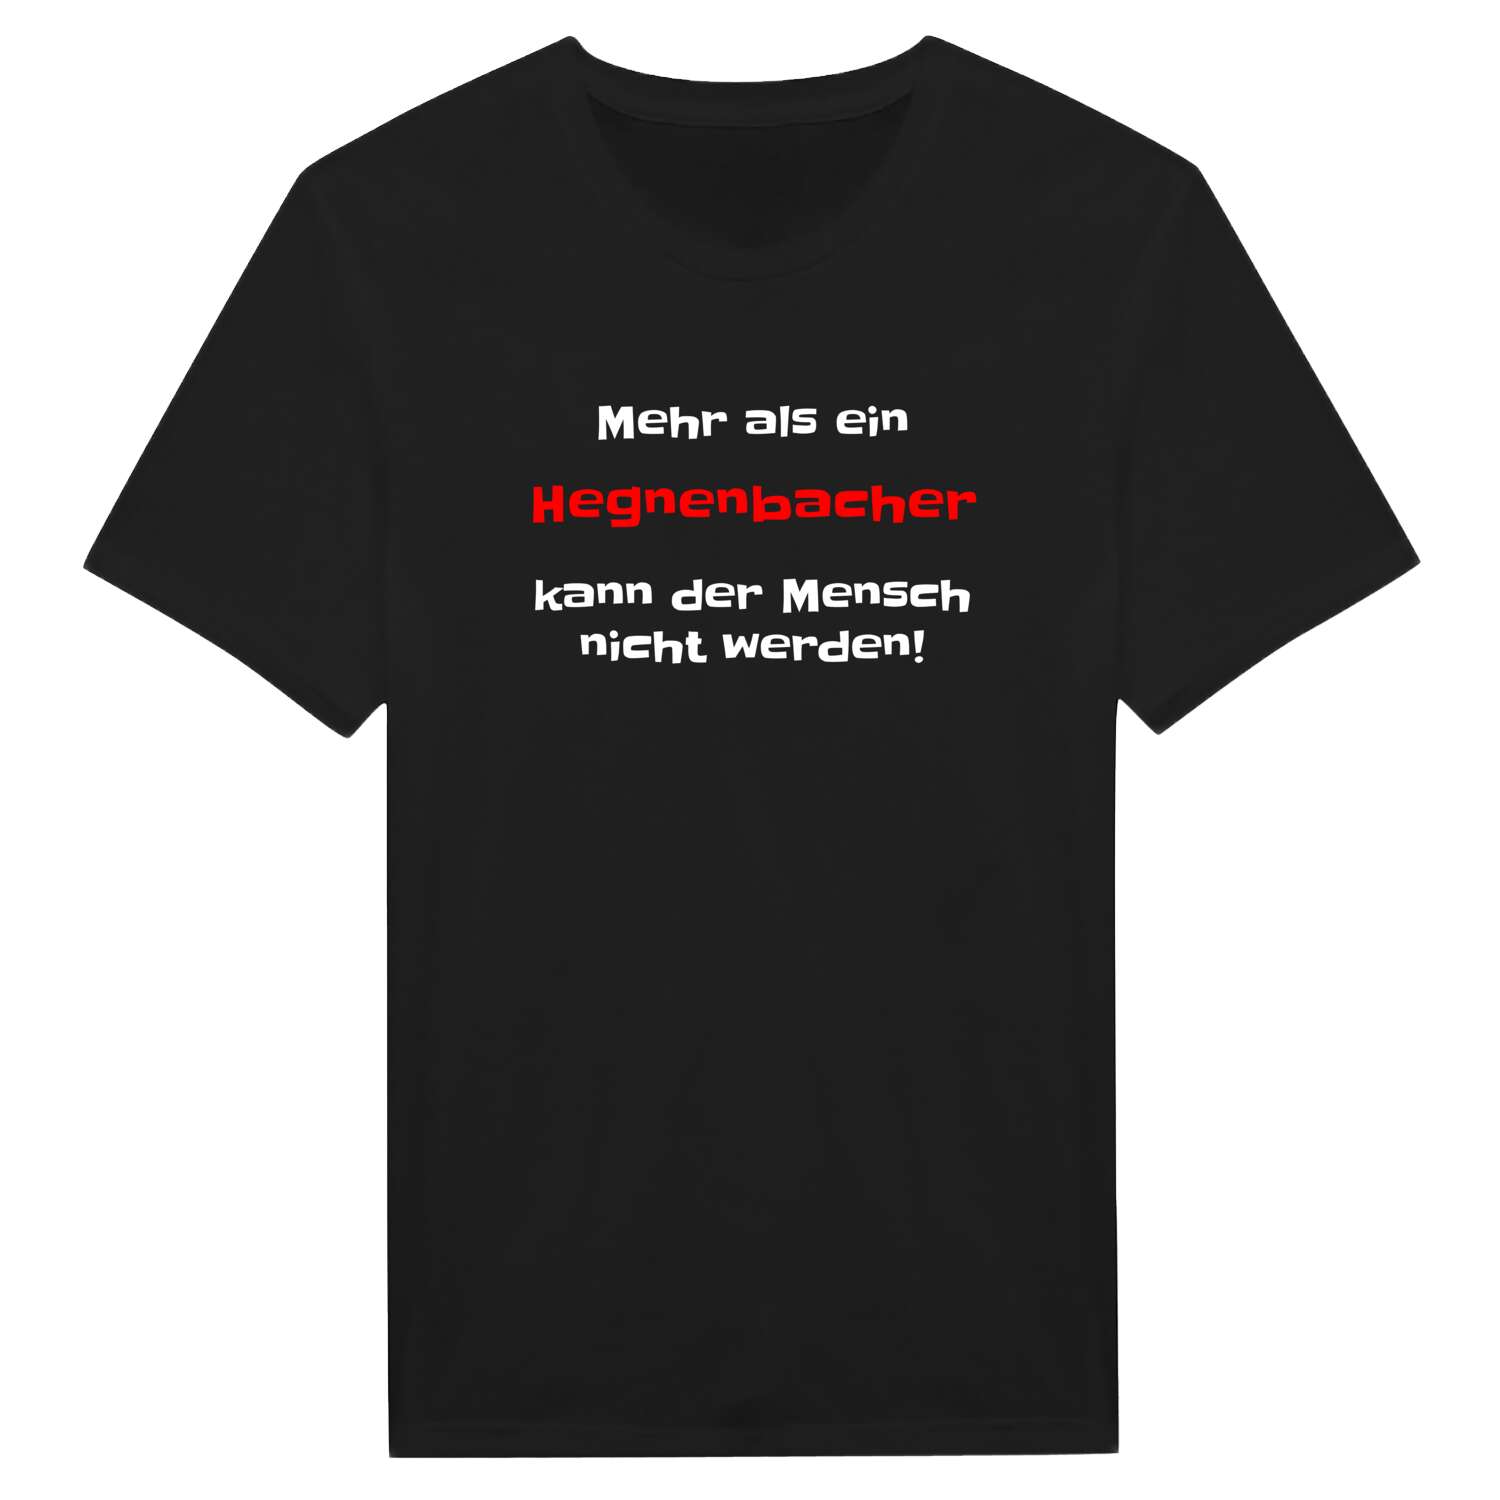 Hegnenbach T-Shirt »Mehr als ein«